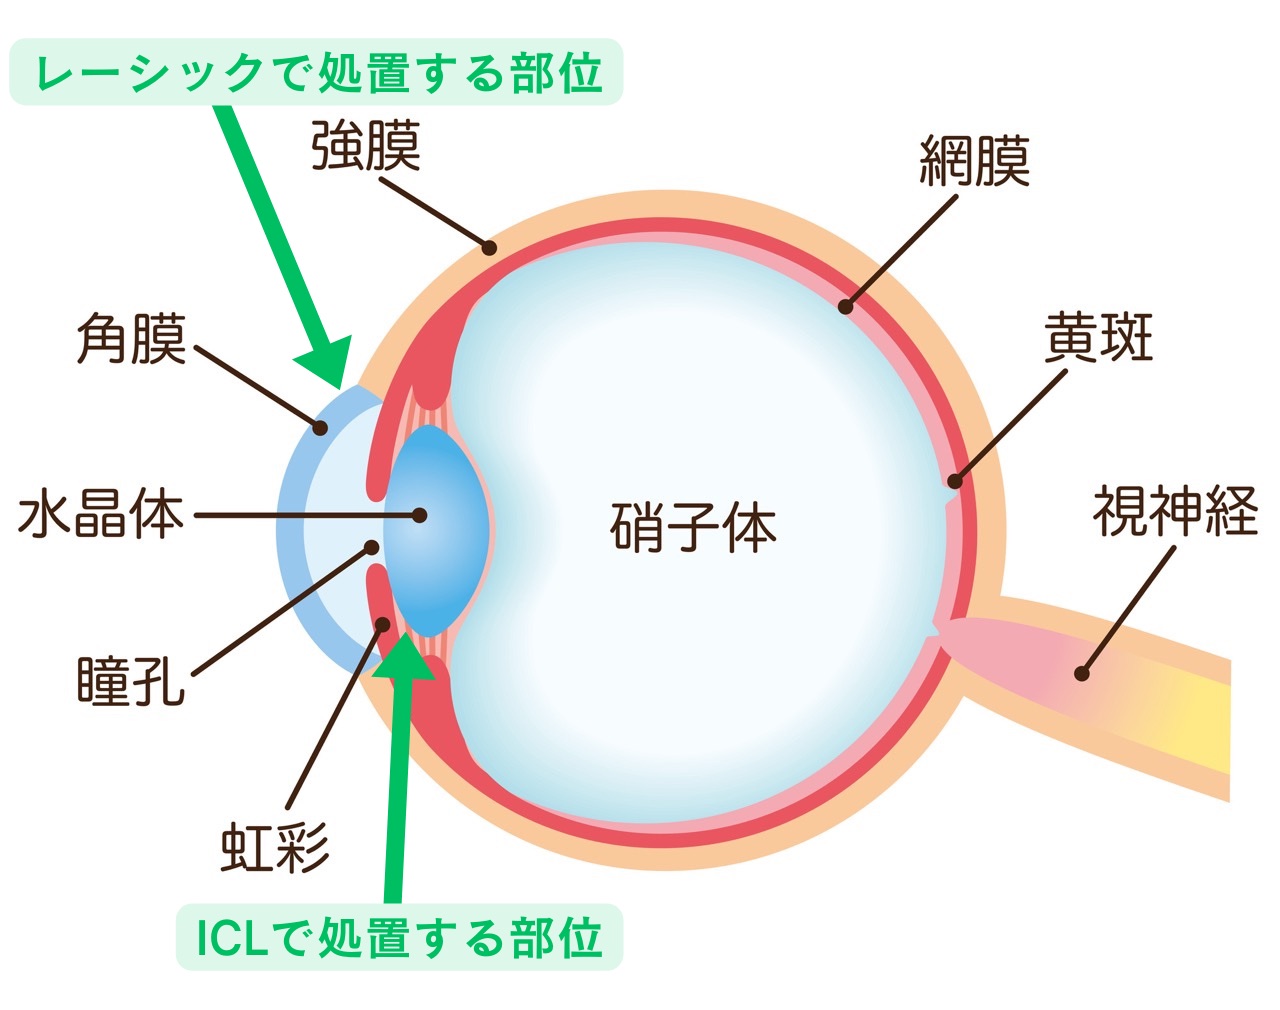 眼の解剖とICL・レーシックで処置する部位